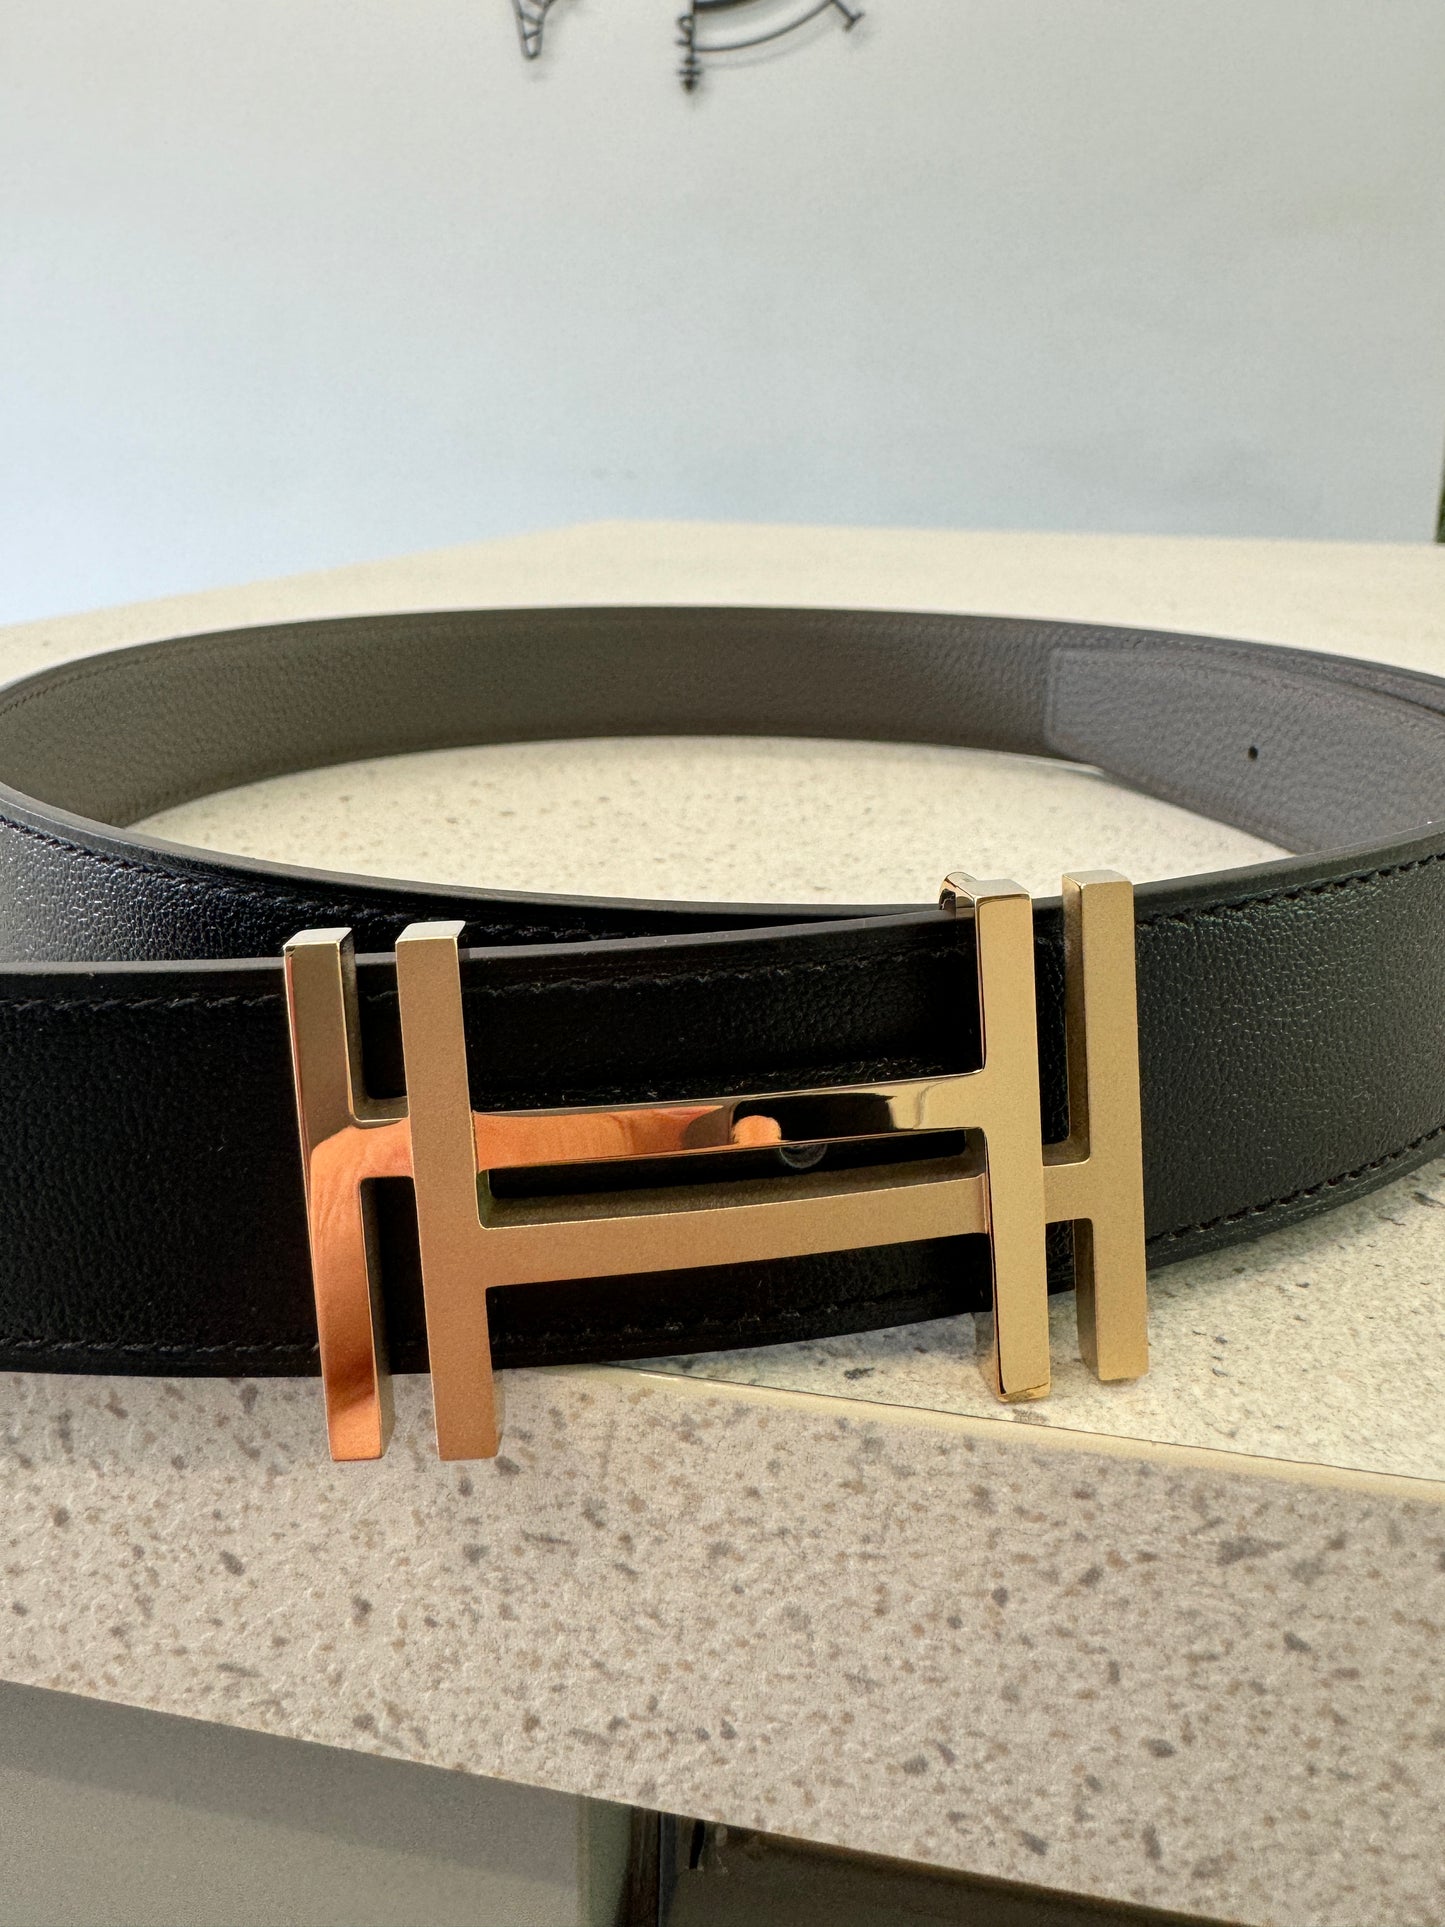 Hermes Men's Belt - 32mm (90cm) in Black/Etain